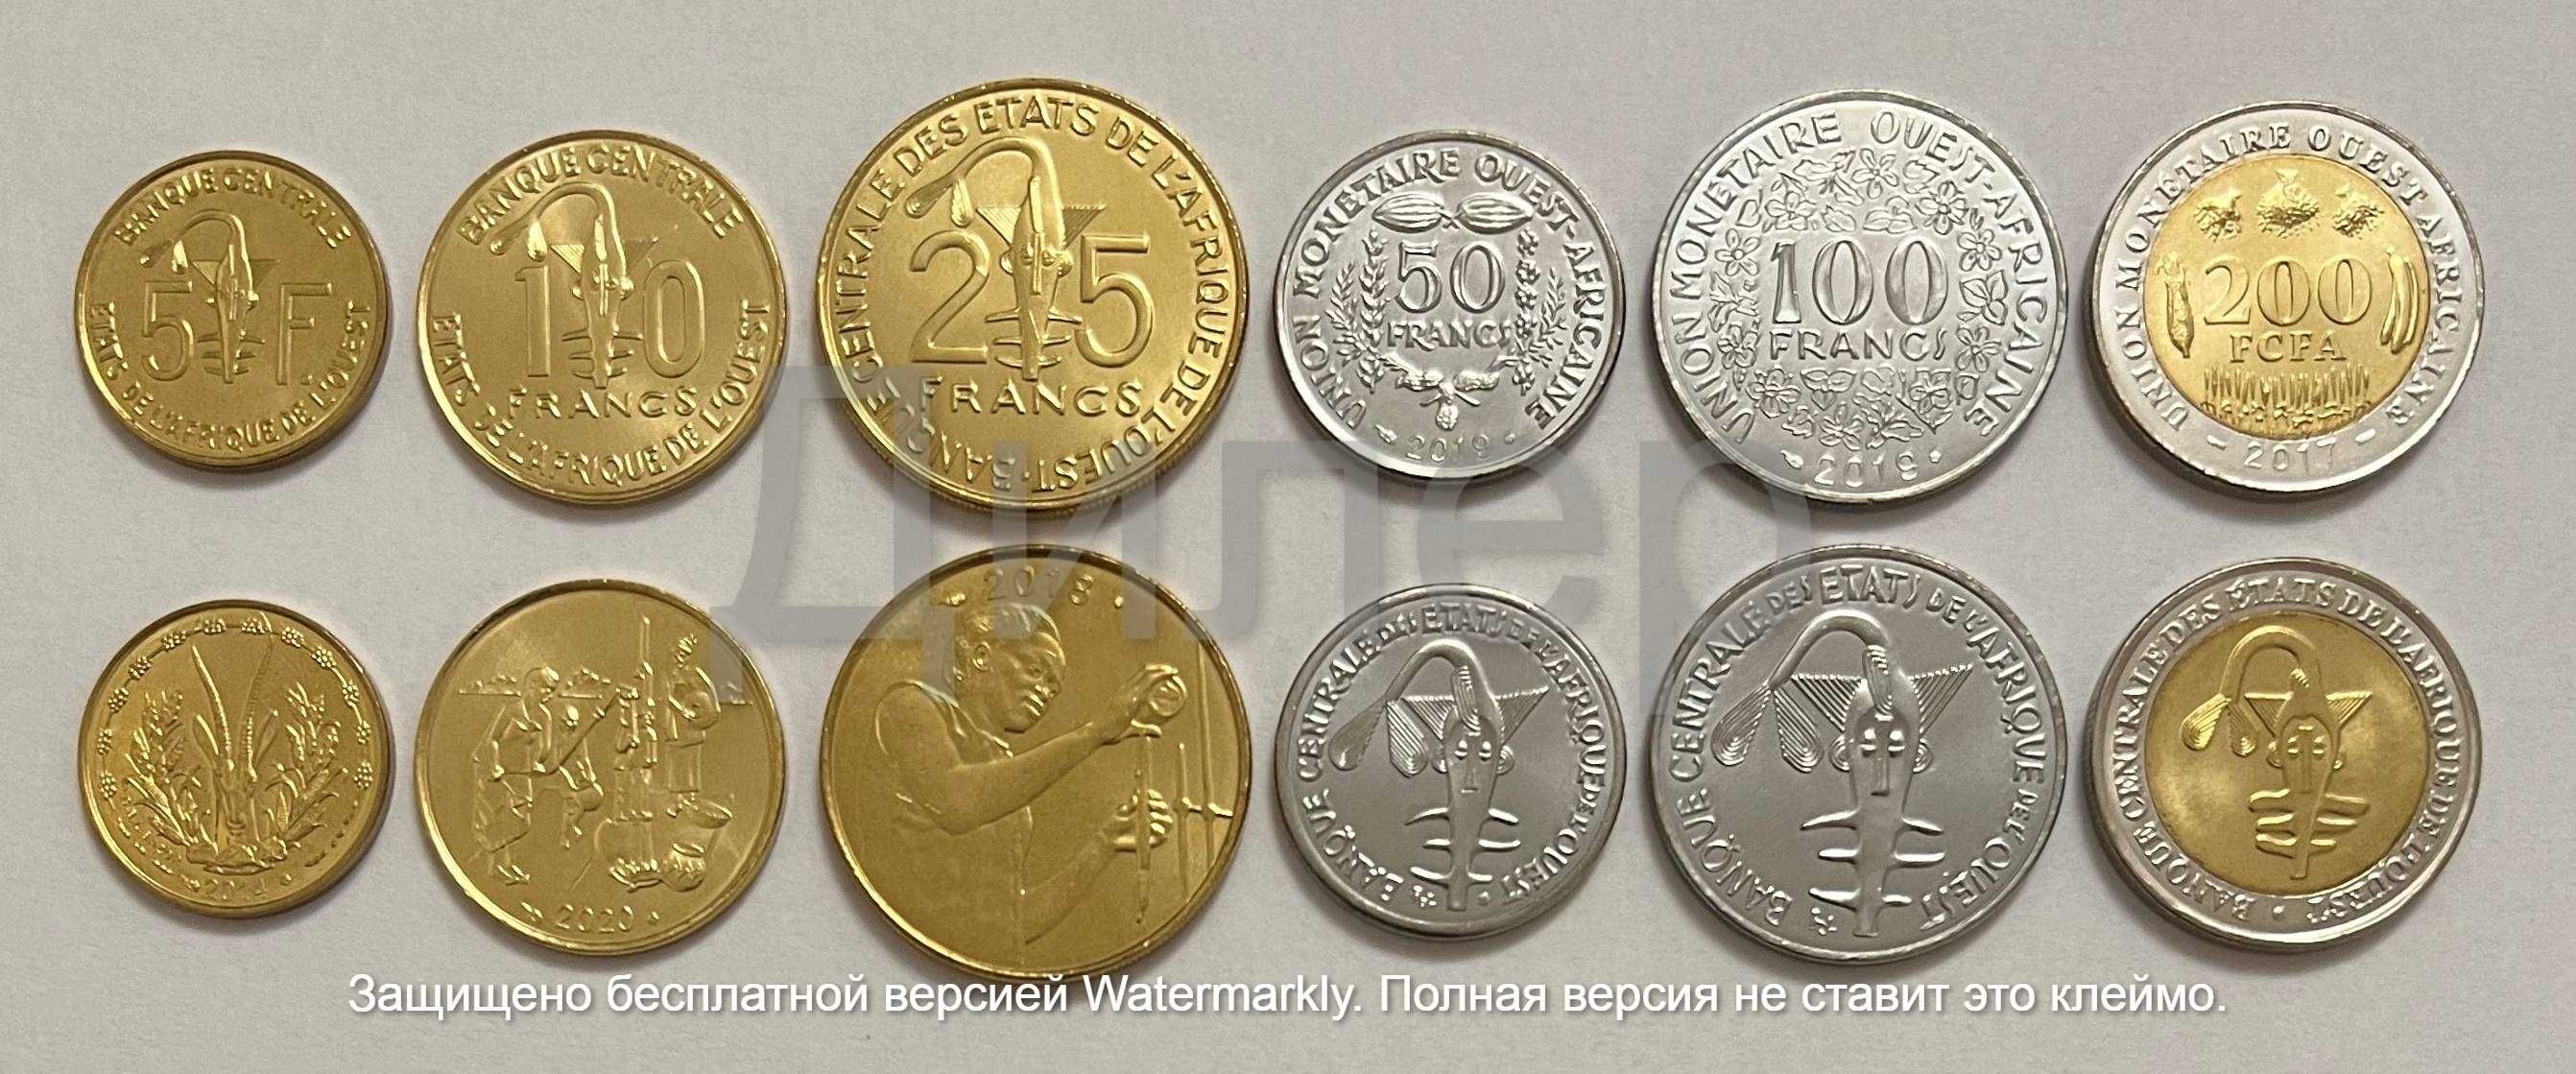 Наборы монет (Алжир, Марокко, Мавритания, САДР, Эритрея и др.) UNC